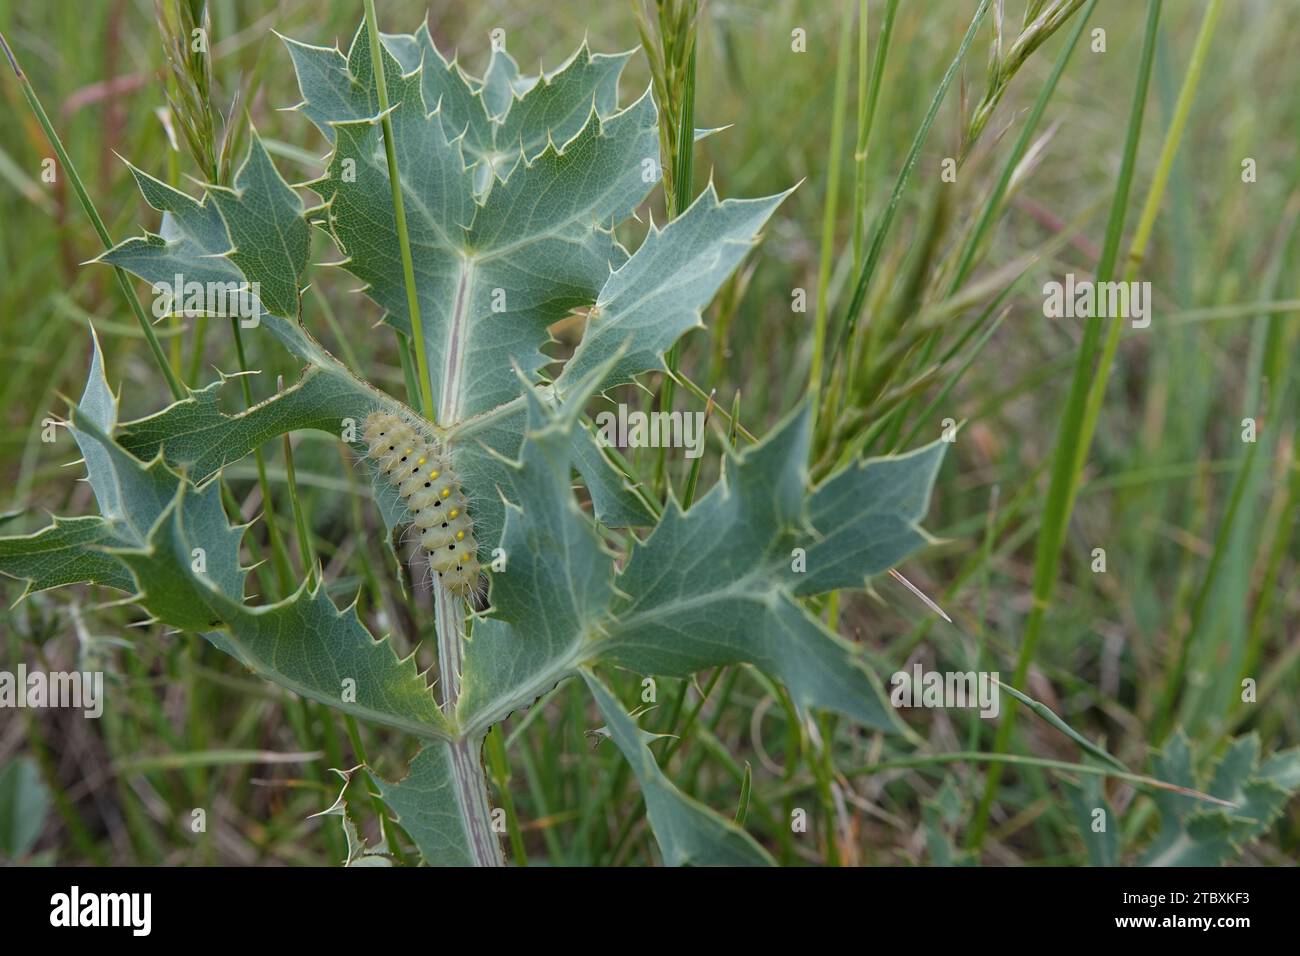 Natürliche Nahaufnahme auf der haarigen grünen raupe der bunten tagelangen, träge burnet Motte Zygaena erythrus, auf einem Blatt des Felderyngos, Eryngium Cam Stockfoto